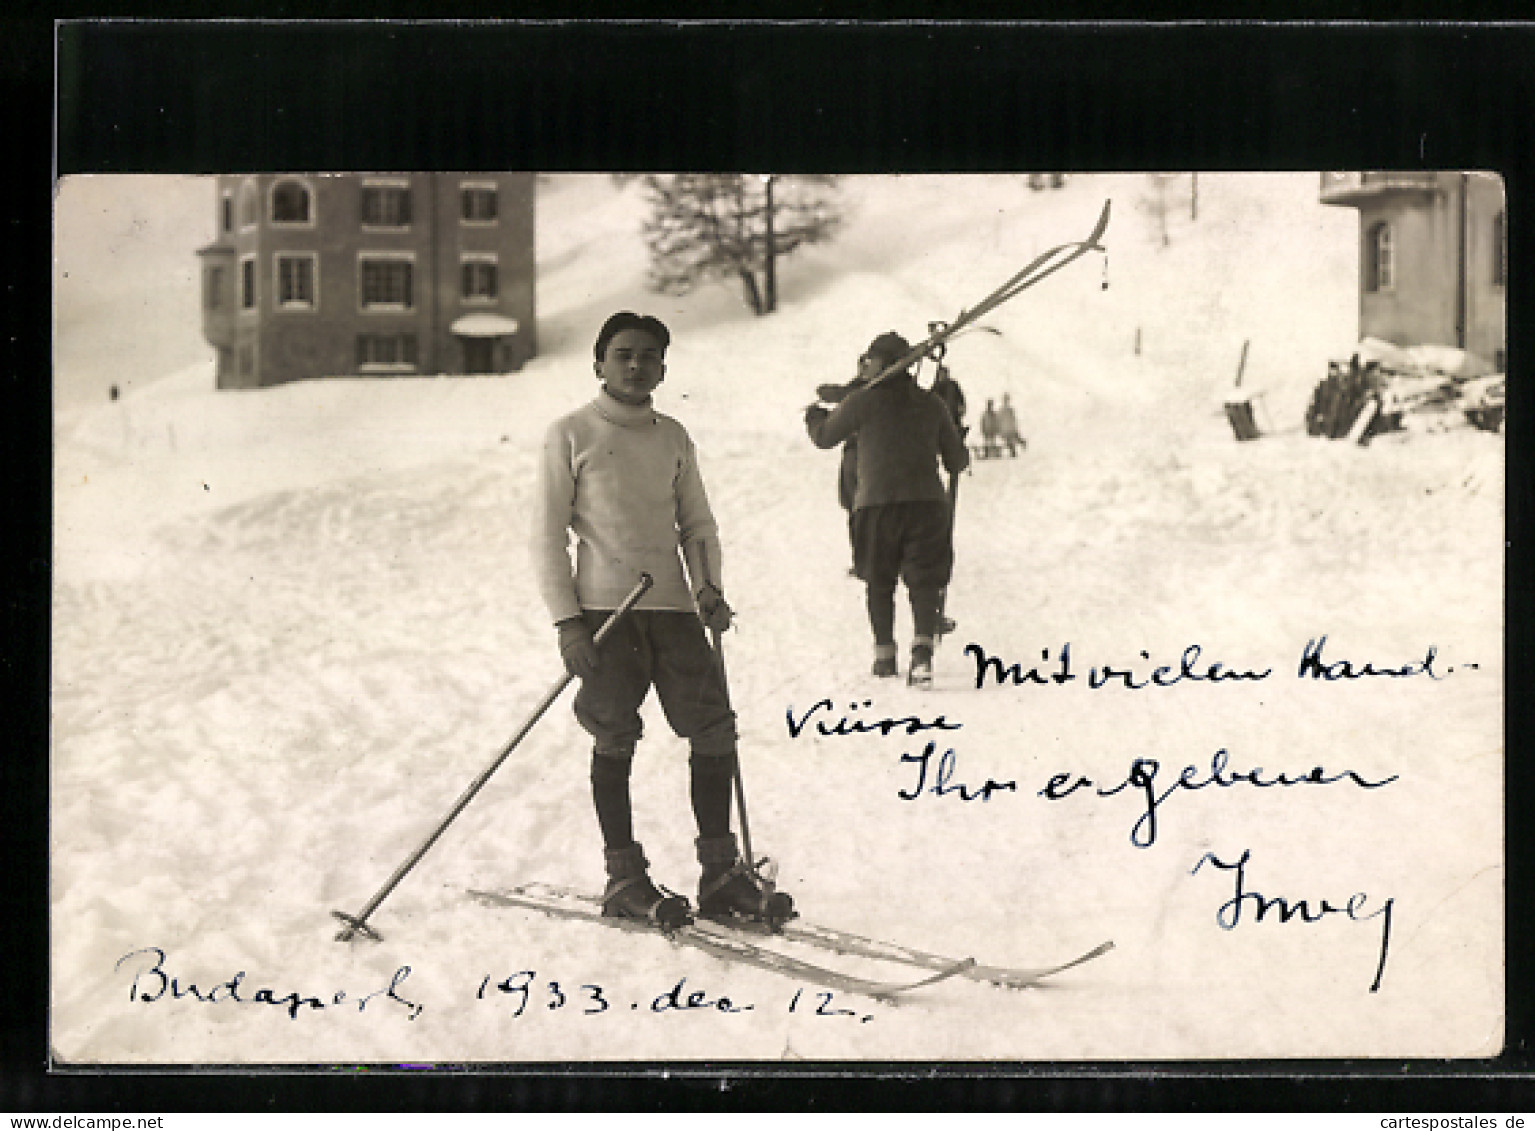 Foto-AK Budapest, Skiläufer In Einer Ortschaft  - Winter Sports